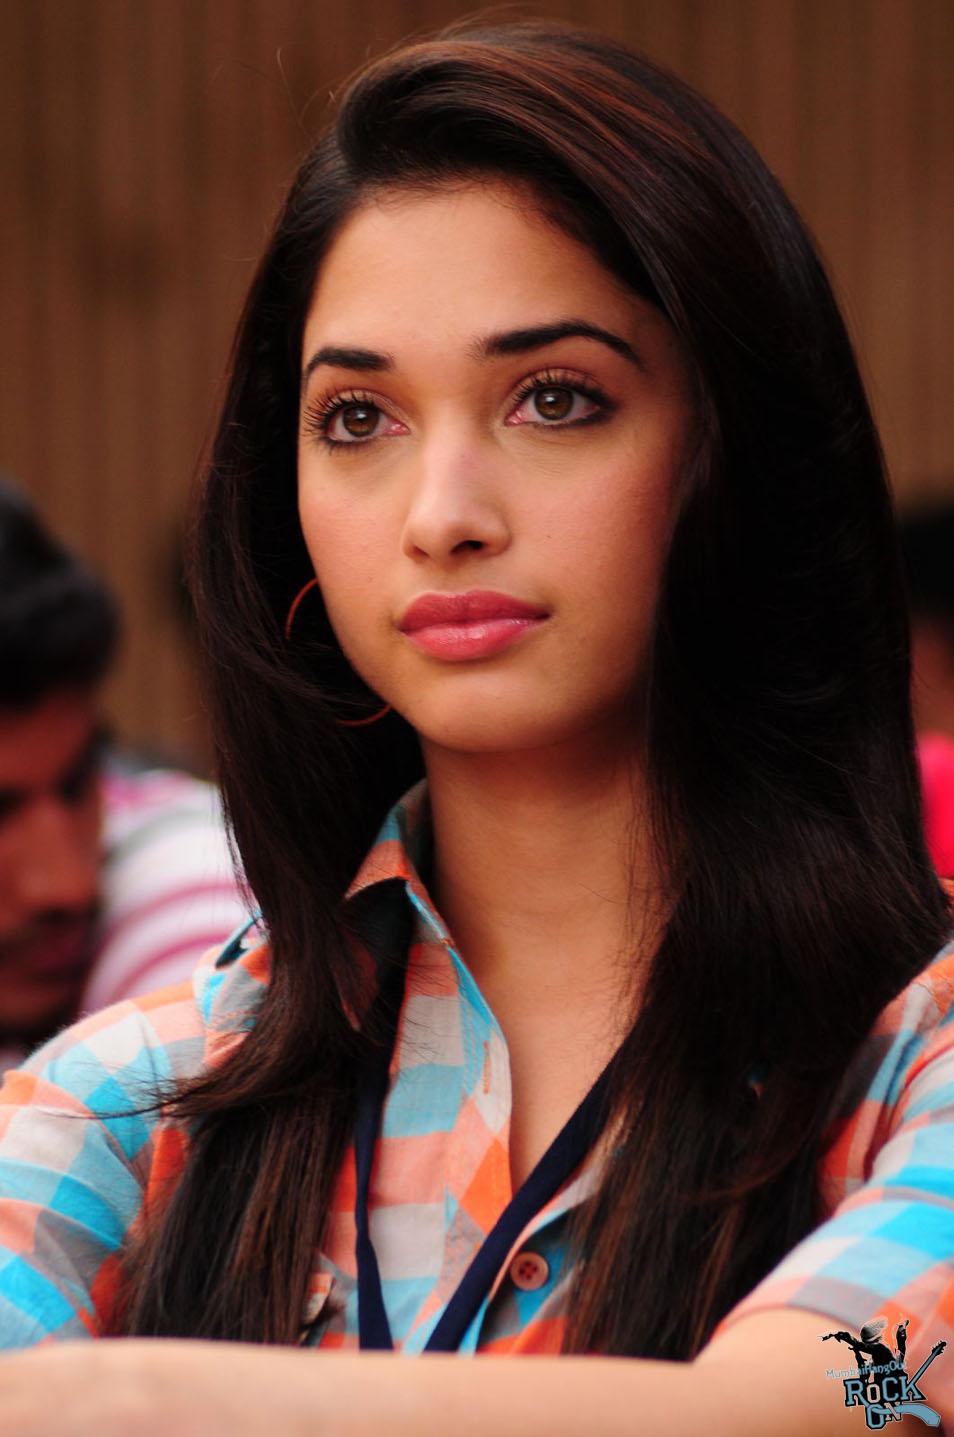 A Teen Hot Indian Actress Tamanna Bhatia Hot Hd Wallpapers